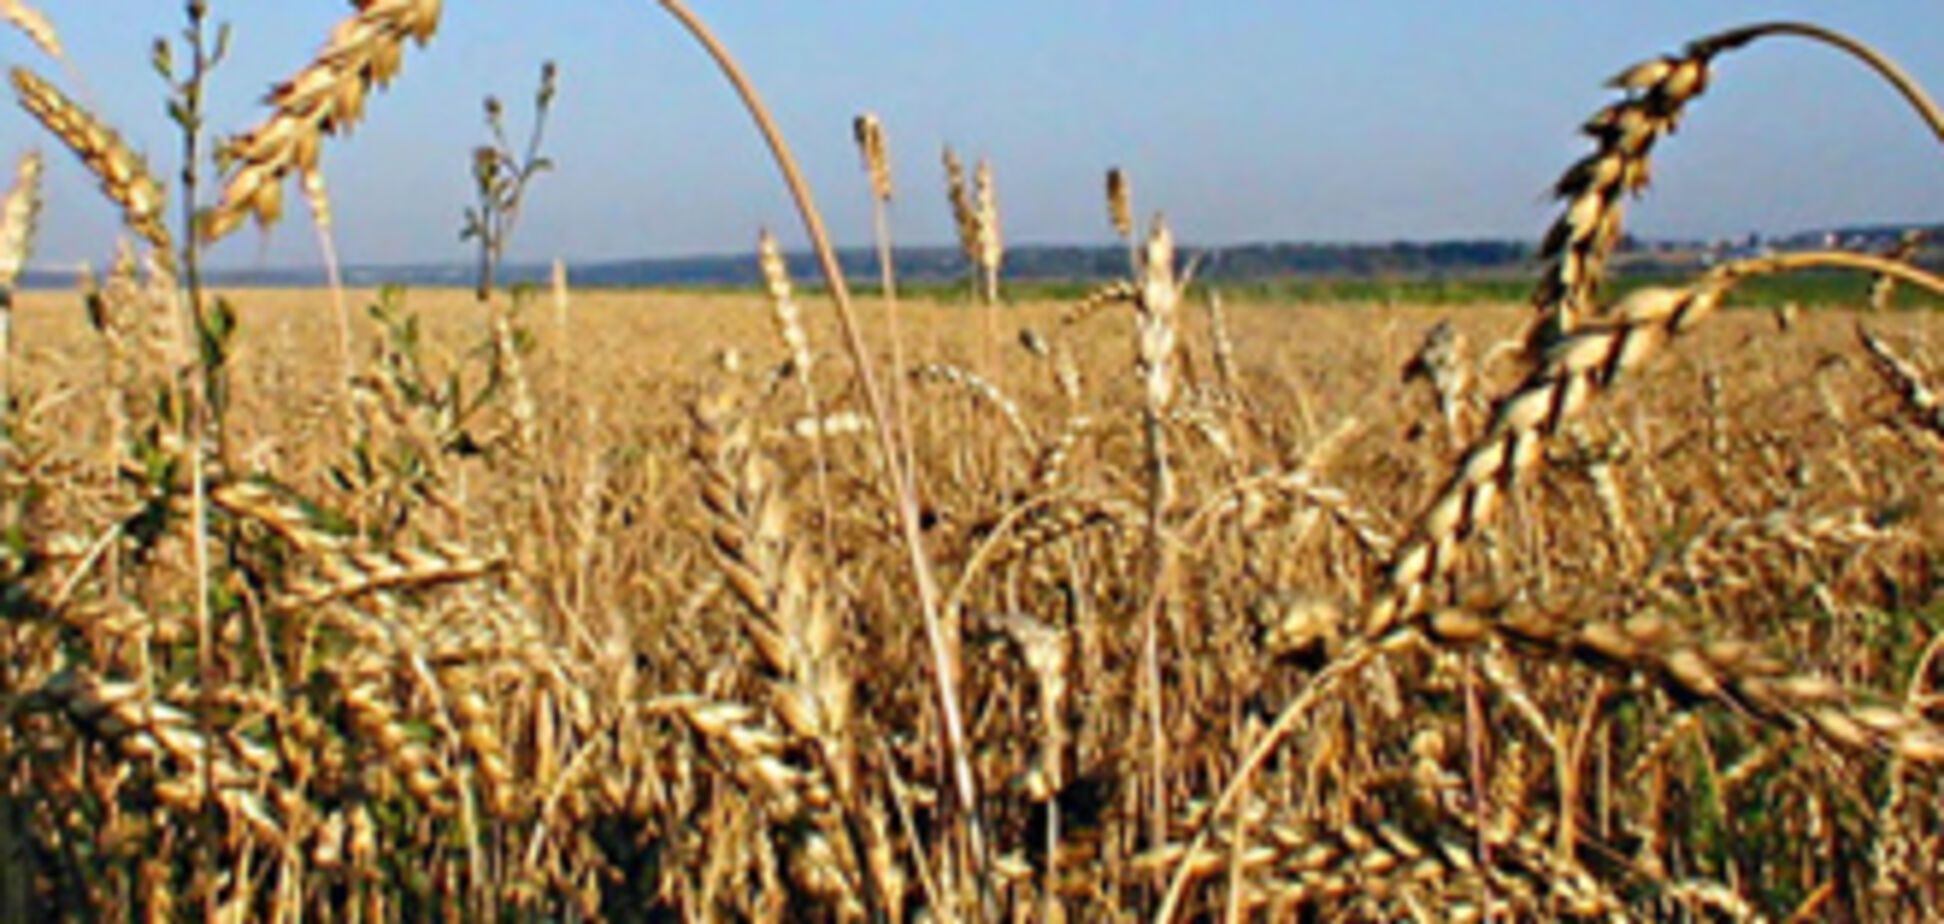 МинАПК рассказало, как законно сбывать плохое зерно